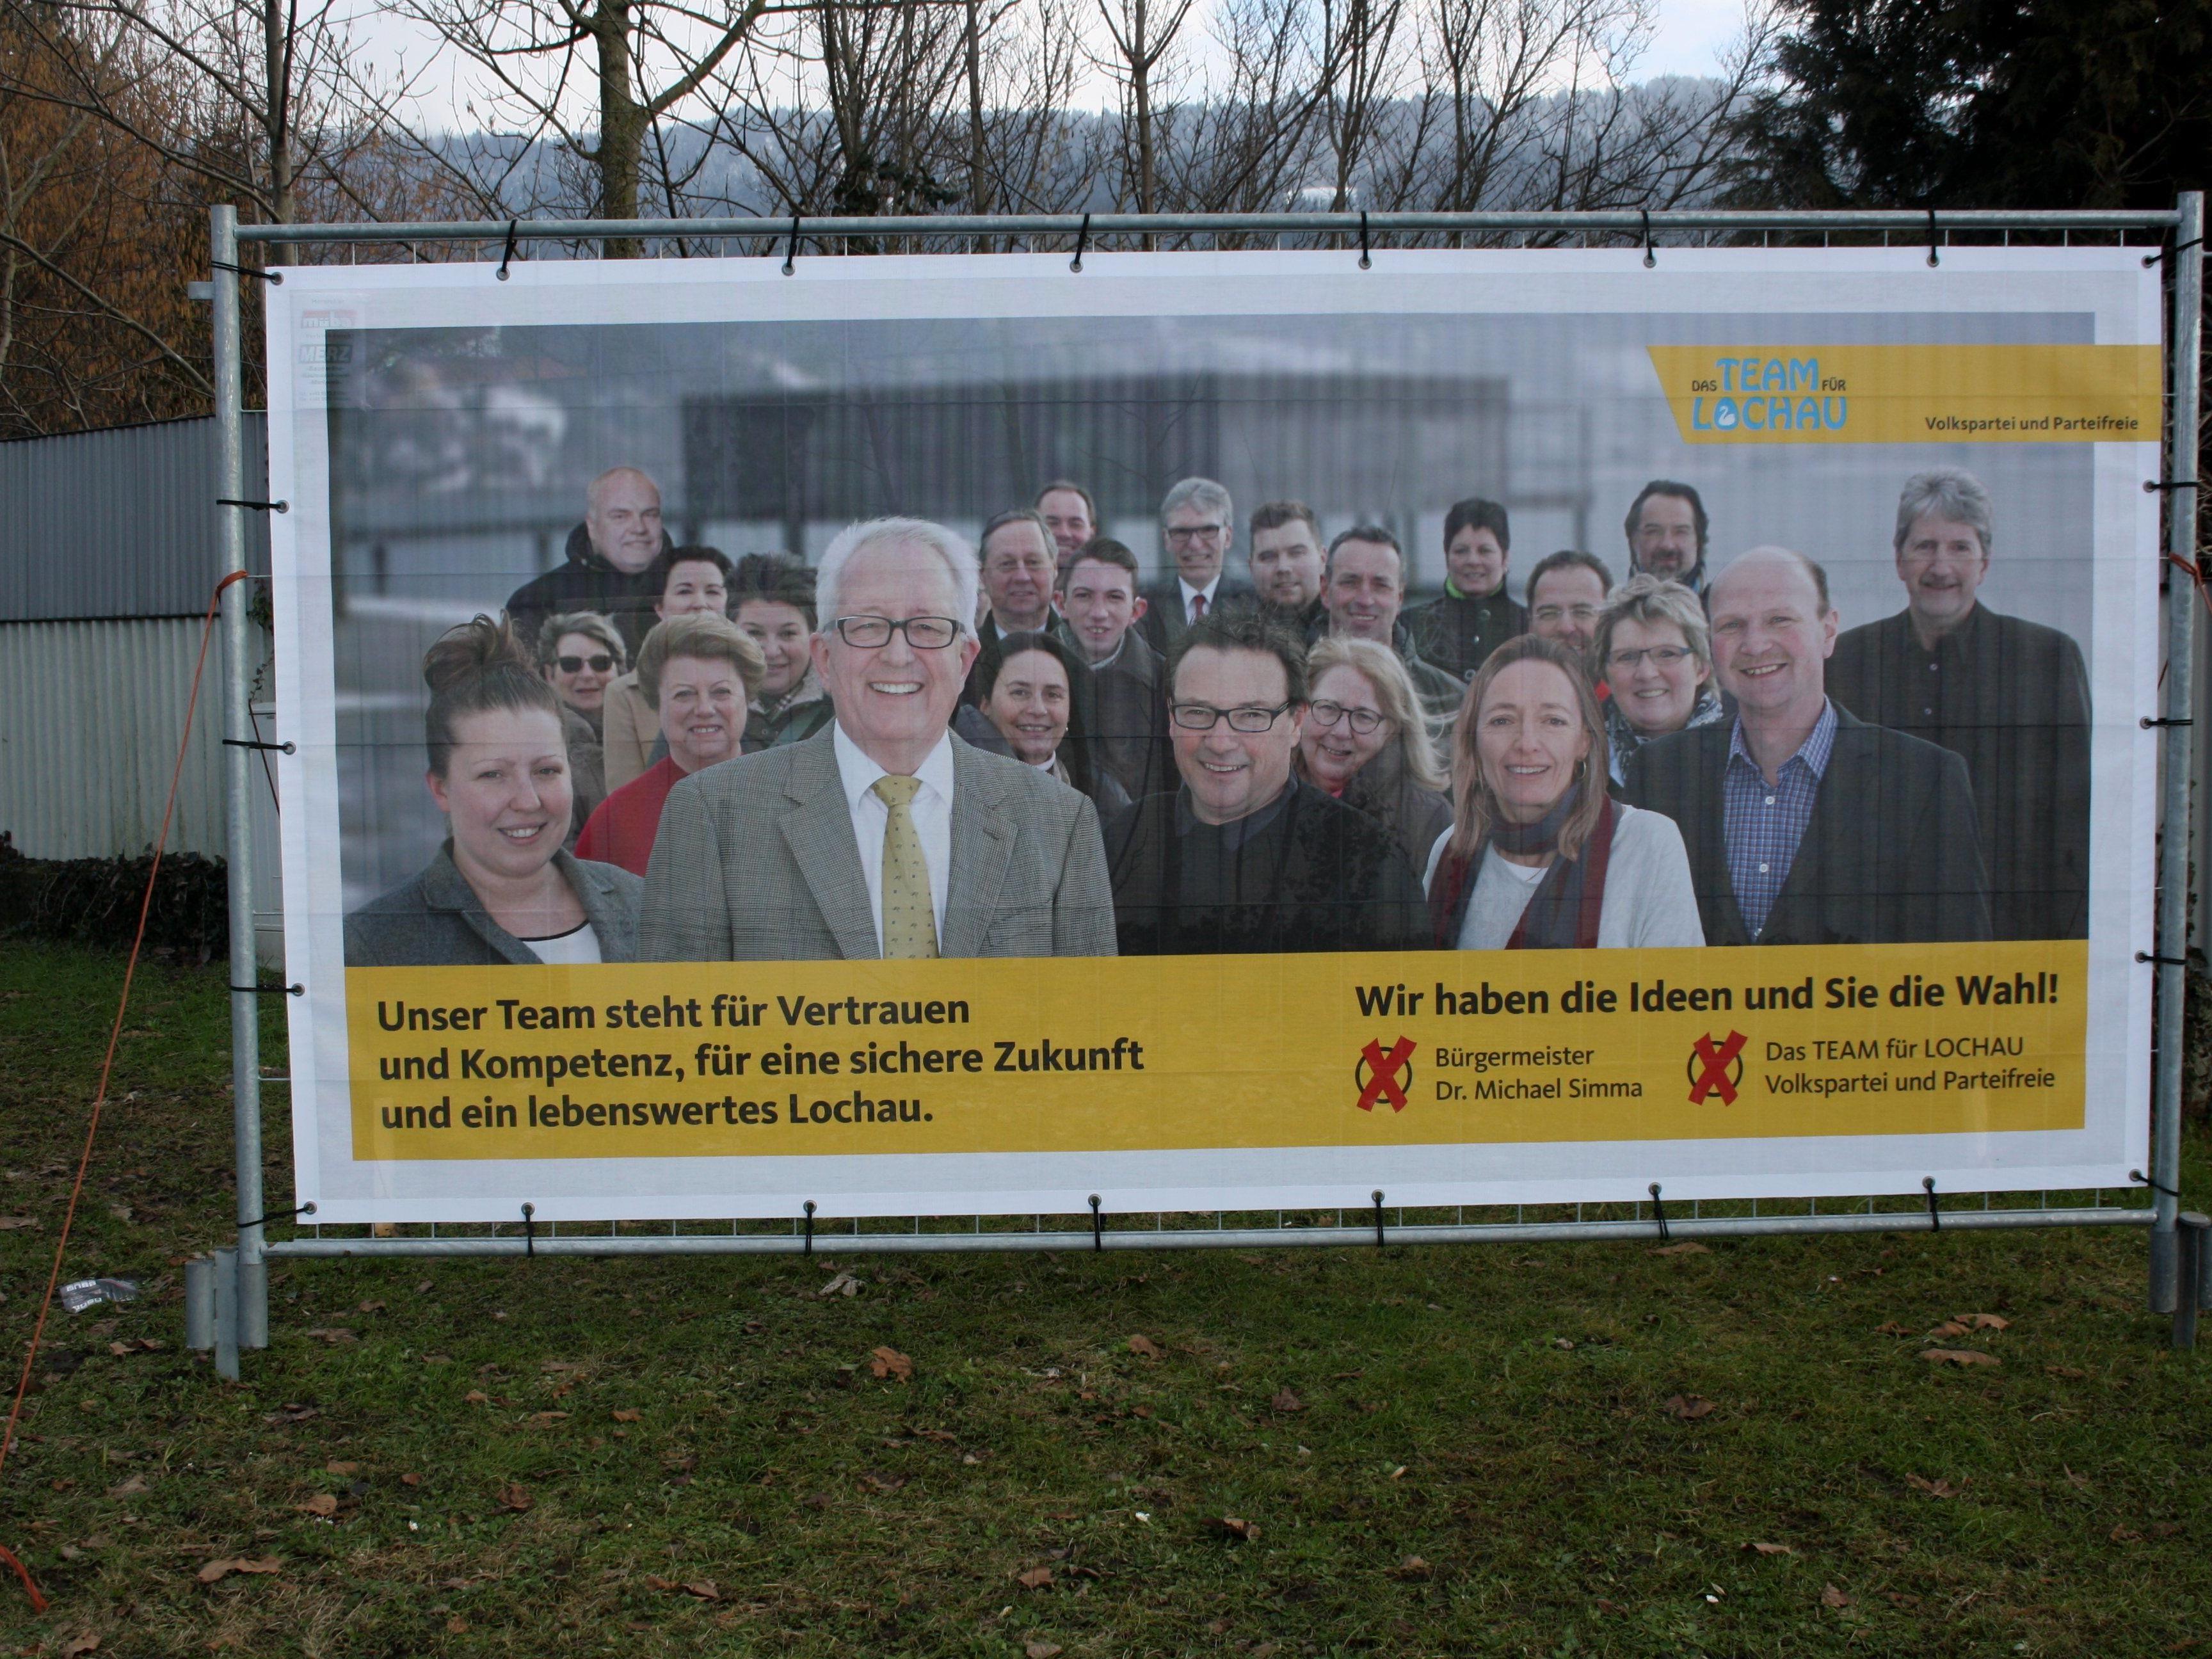 Auf sieben Großplakaten werben Bürgermeister Michael Simma und „Das TEAM für LOCHAU – Volkspartei und Parteifreie“ um Stimmen und Vertrauen.